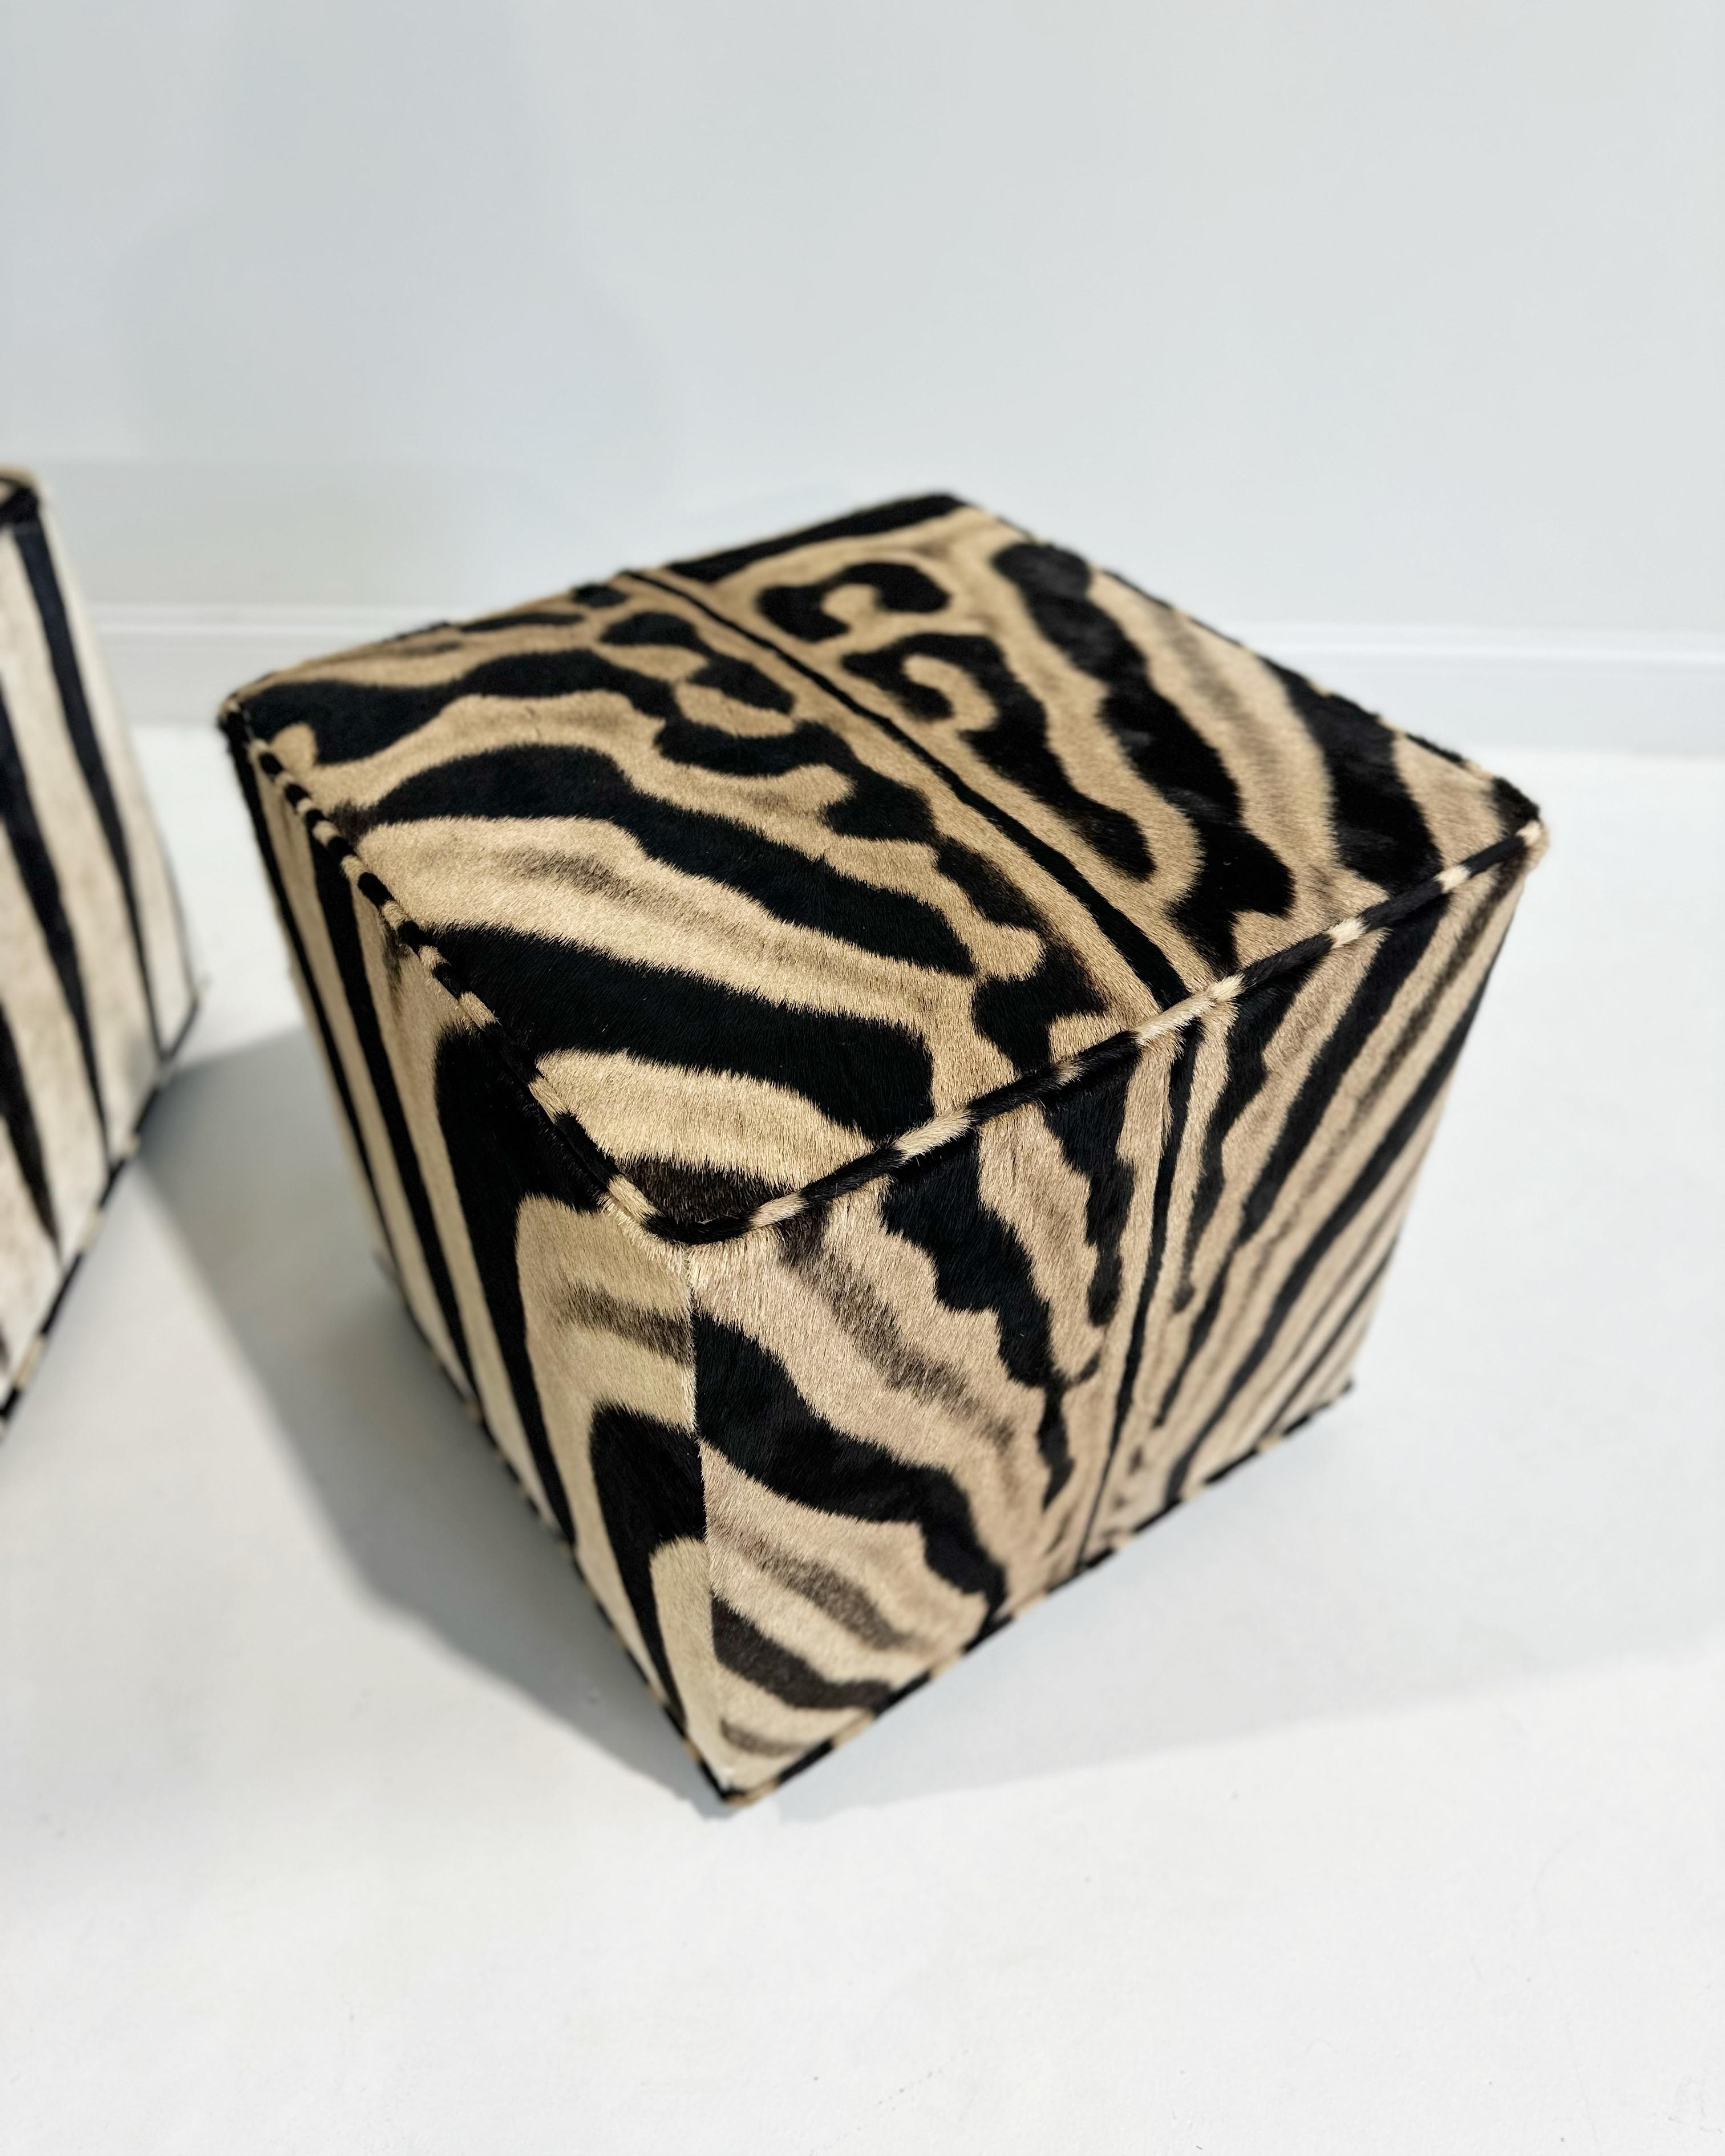 Teil der Forsyth Originals Collection'S. Der Forsyth Cube Ottoman ist aus unseren Zebrafellen entworfen und handgefertigt. Es ist ein vielseitiges Stück für jeden Raum, das natürliche Texturen und Muster hinzufügt. Der perfekte Couchtisch, Ottoman,